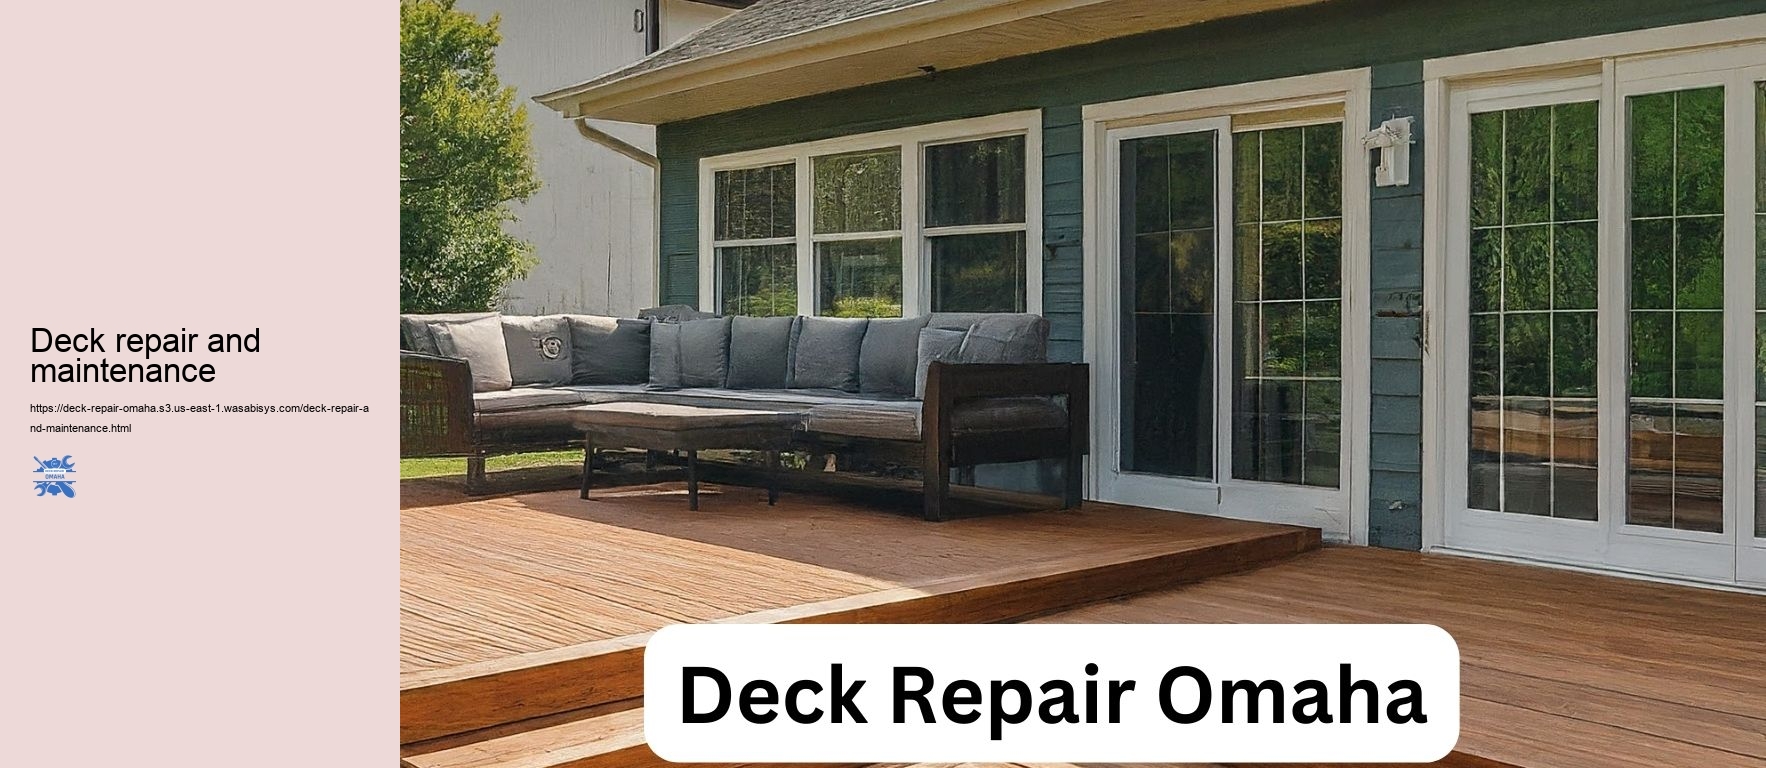 Deck repair and maintenance